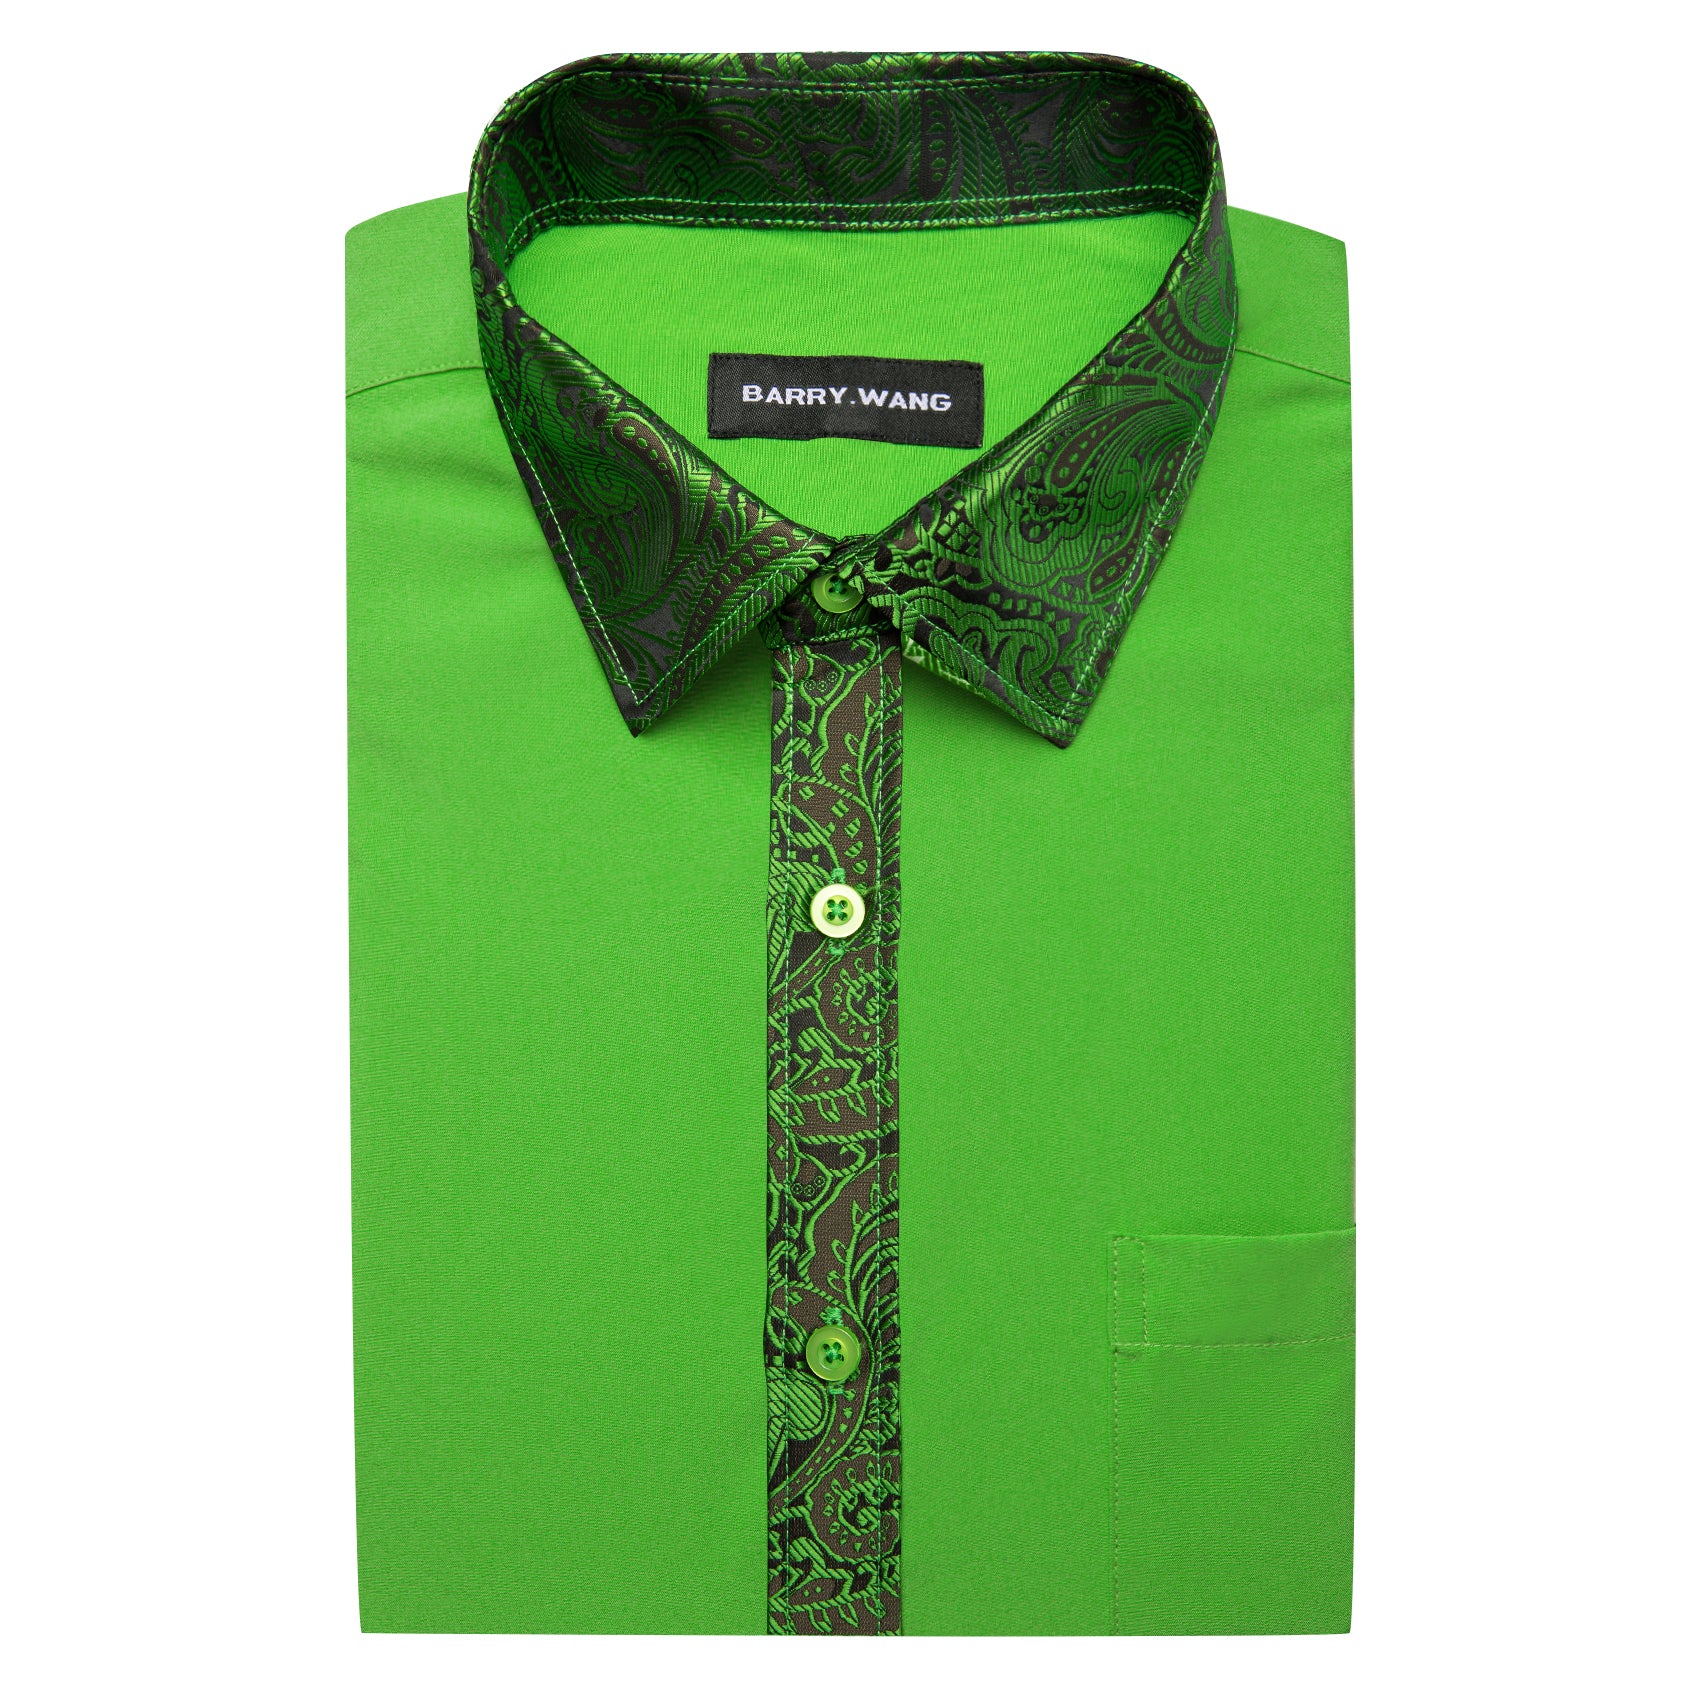 Barry.wang Light Green Splicing Men's Business Shirt